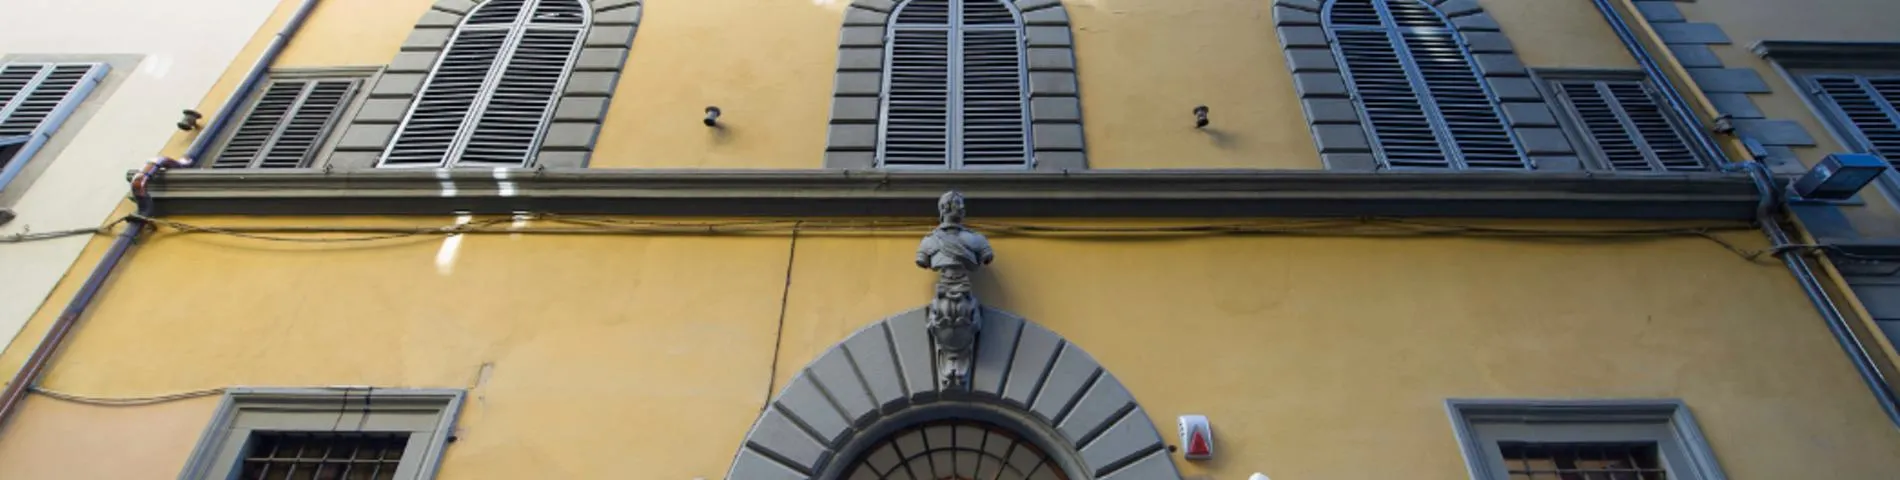 Scuola Lorenzo de Medici 사진 1